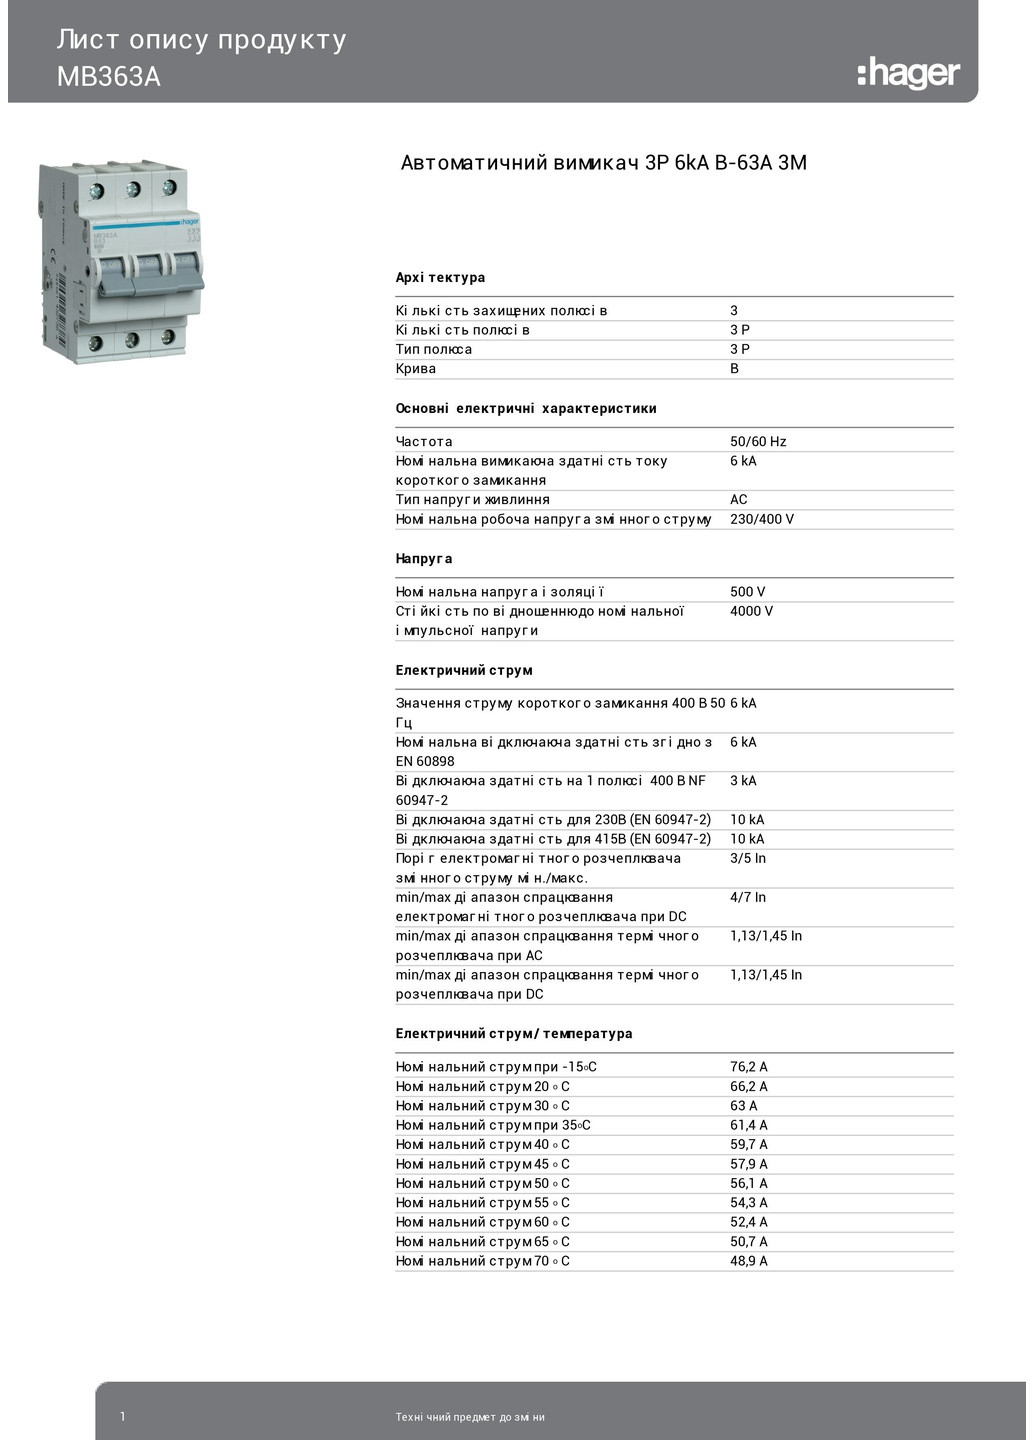 Вводный автомат трехполюсный 63А автоматический выключатель MB363A 3P 6kA B63A 3M (3130) Hager (265535711)